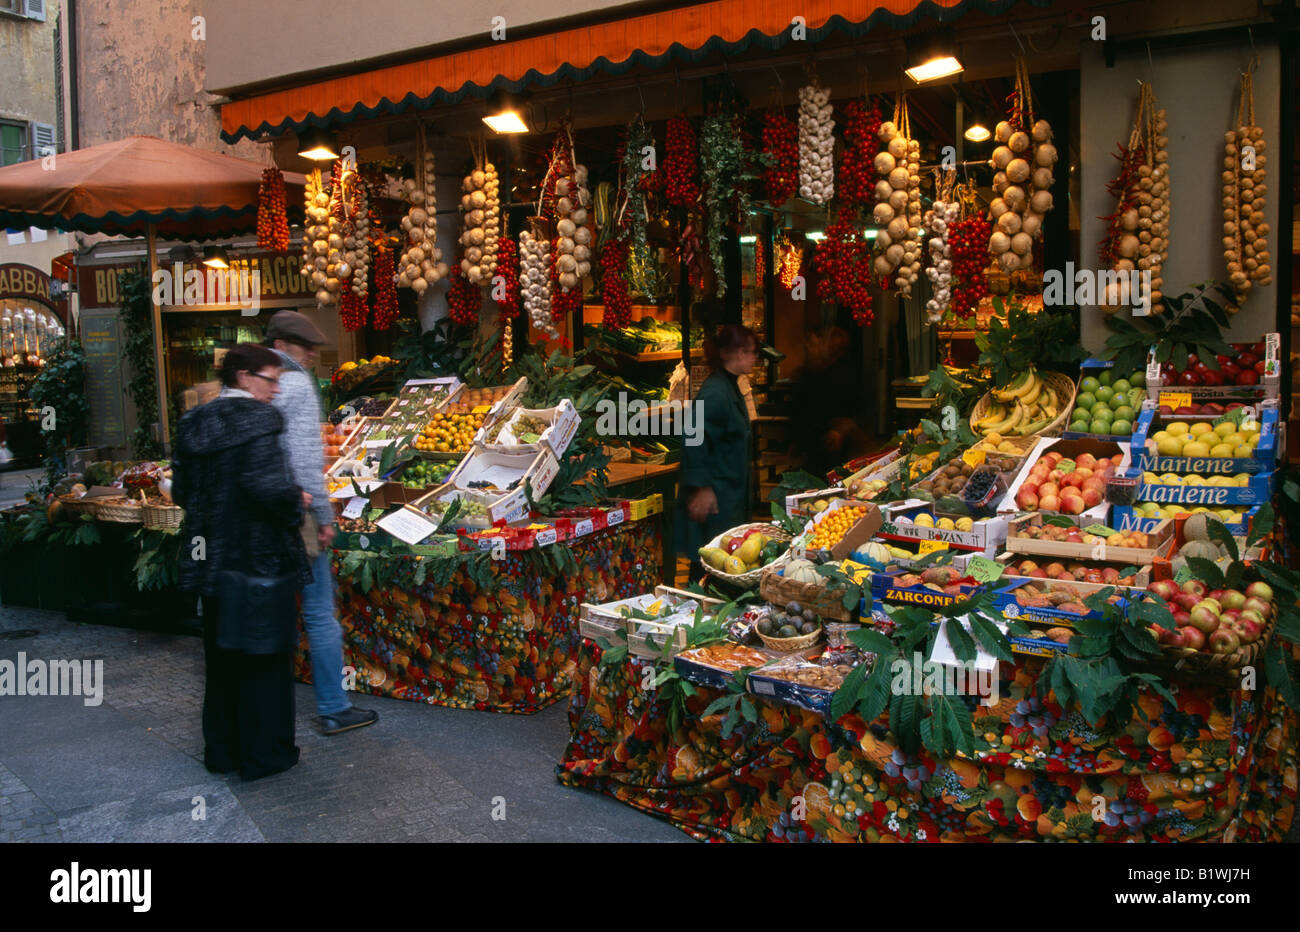 Der Schweiz Ticino Lugano italienischen Seen Obst- und Gemüseladen mit Kunden und Essen außerhalb auf Gehweg Bürgersteig angezeigt Stockfoto